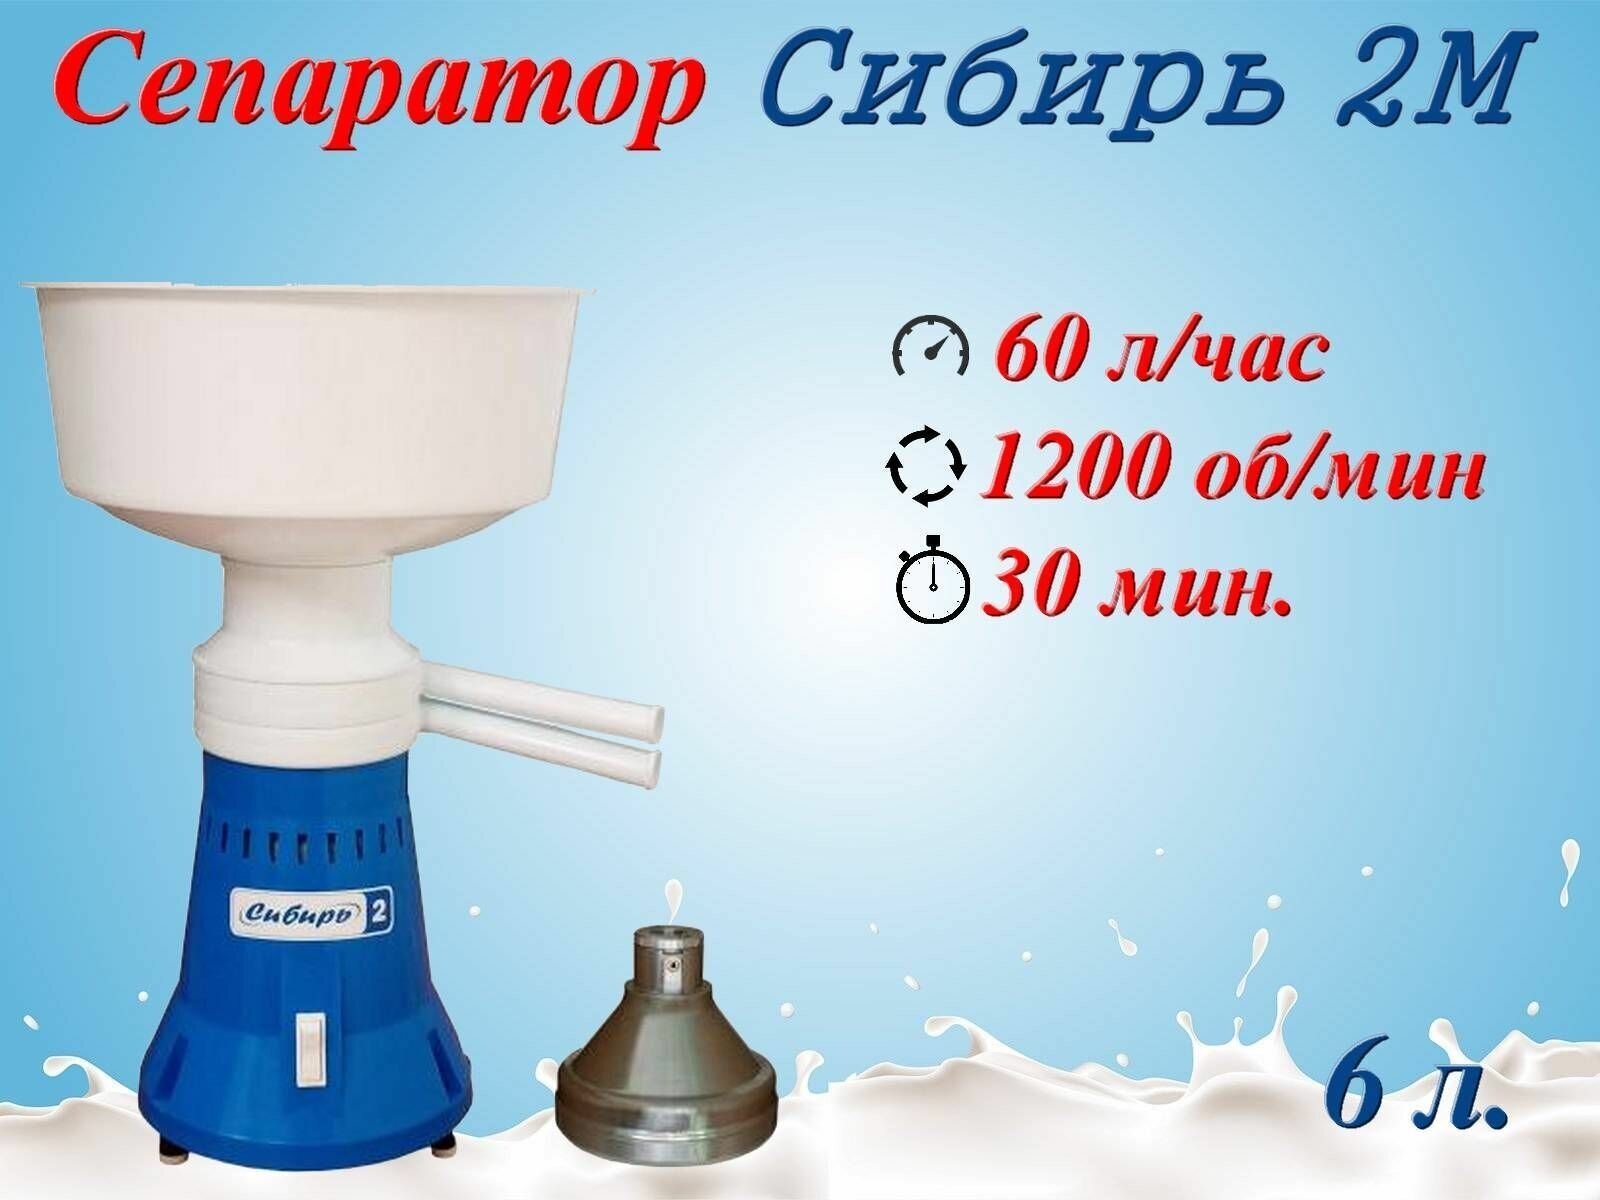 Сепаратор для молока электрический Сибирь-2М, 60 л/ч, 12 000 об/мин, Металлический барабан